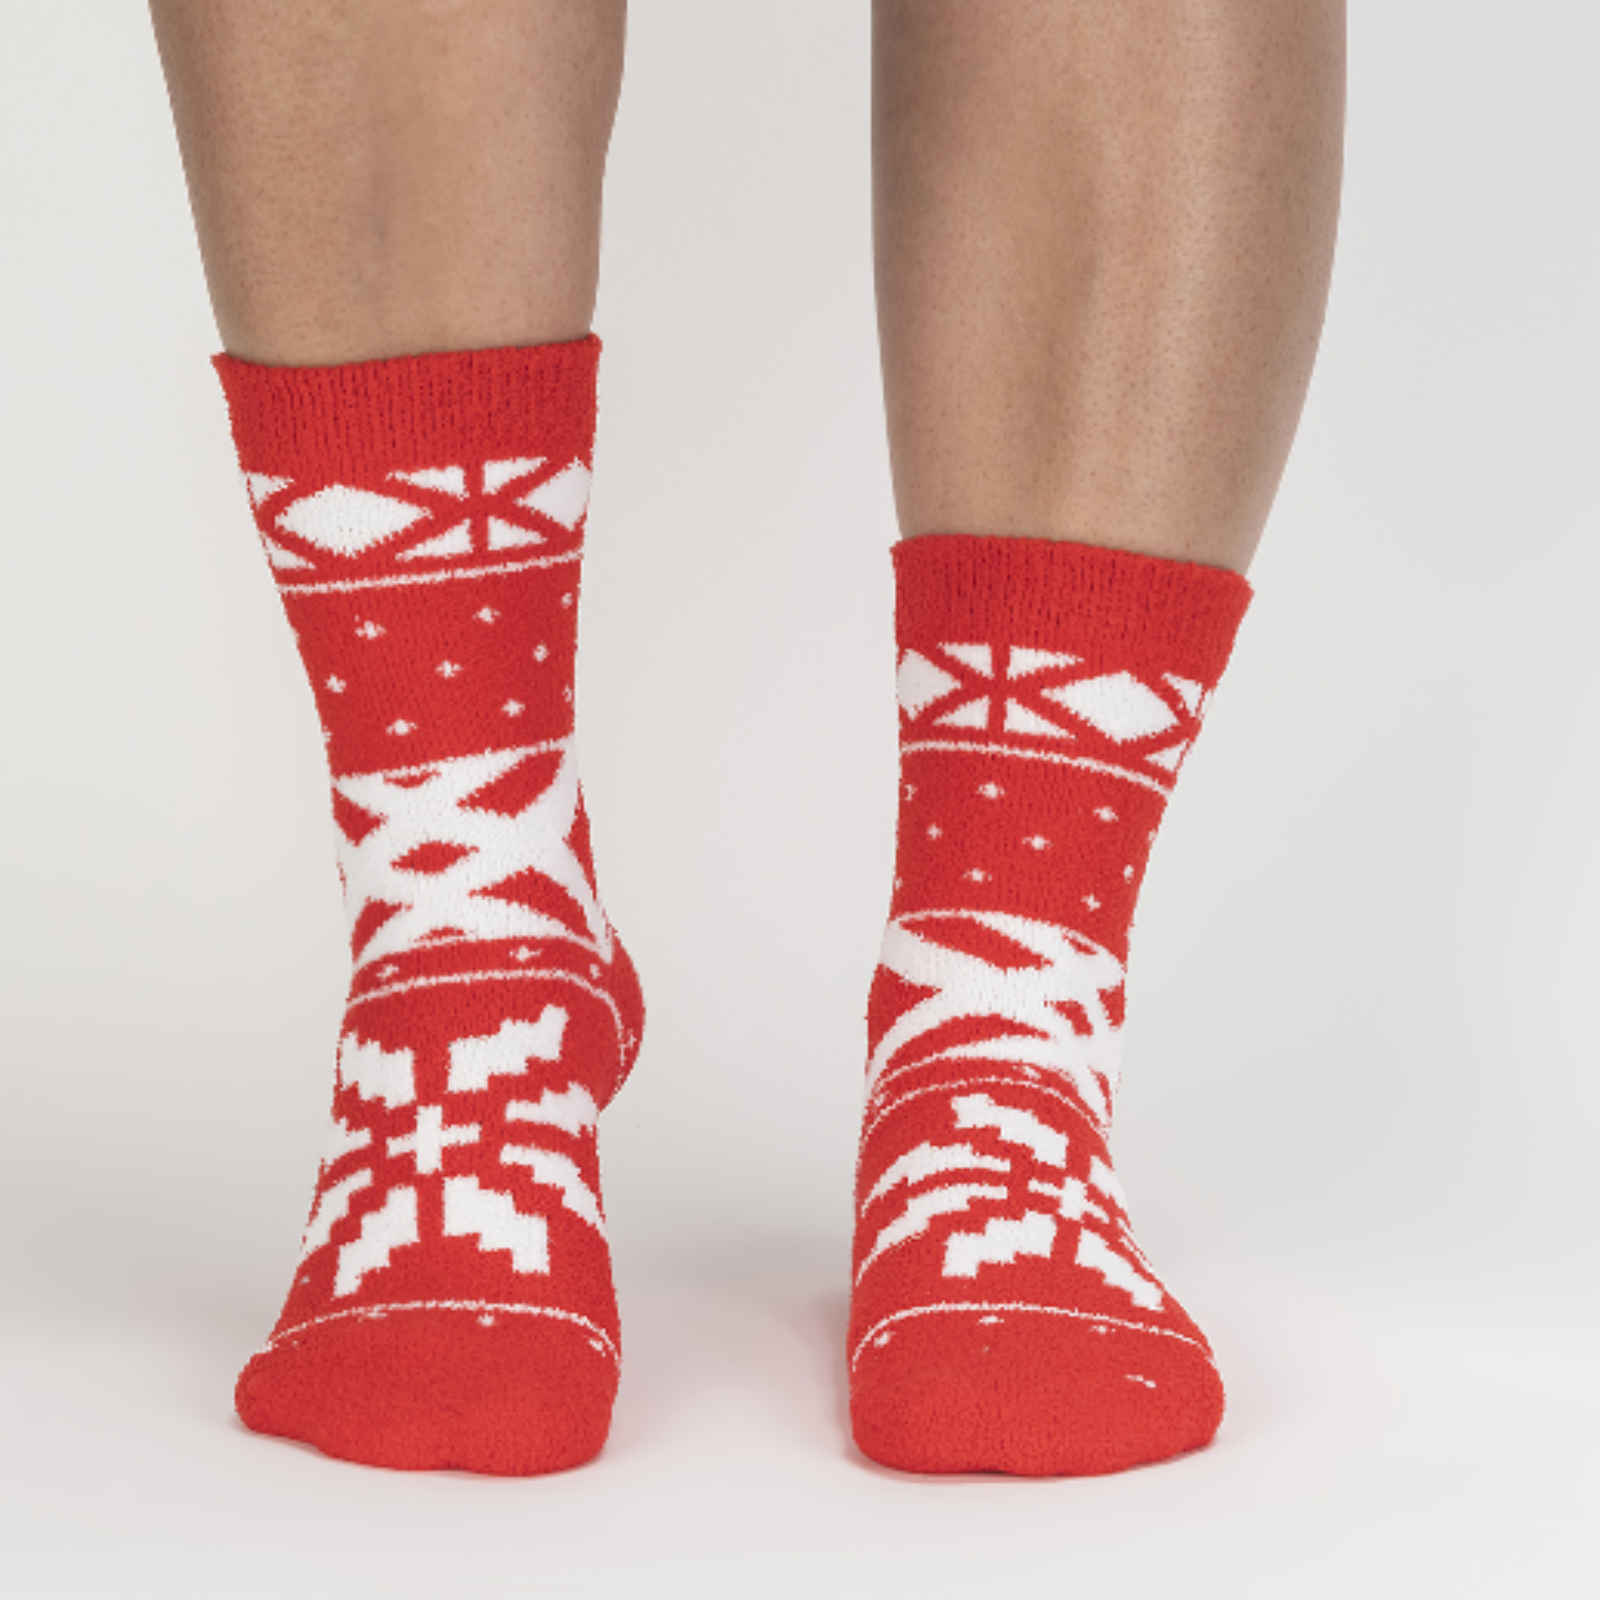 Sock It To Me You Sweater Believe It women's slipper sock featuring red fair isle pattern. Socks worn by model seen from front. 